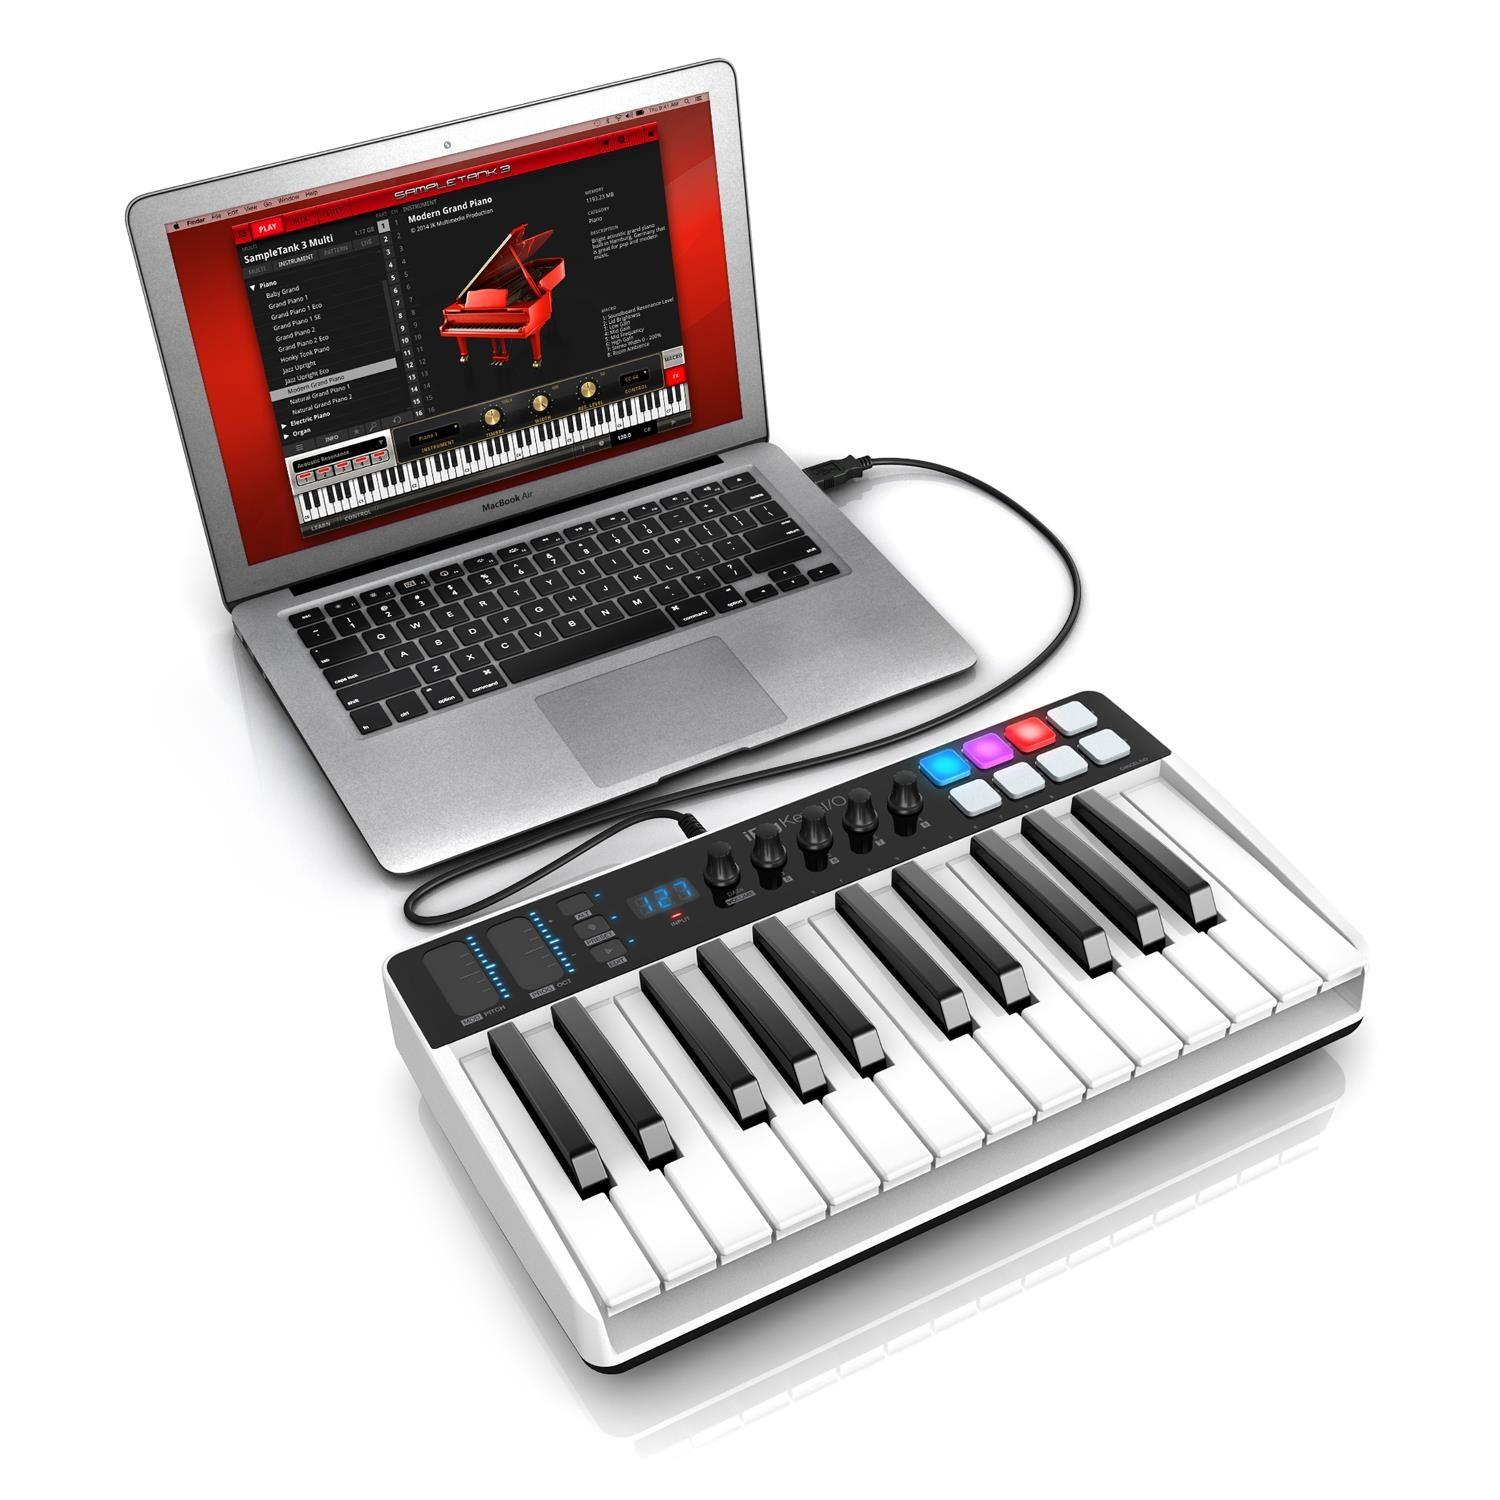 IK Multimedia iRig Keys i/0 25 Keys Interface Keyboard - DY Pro Audio